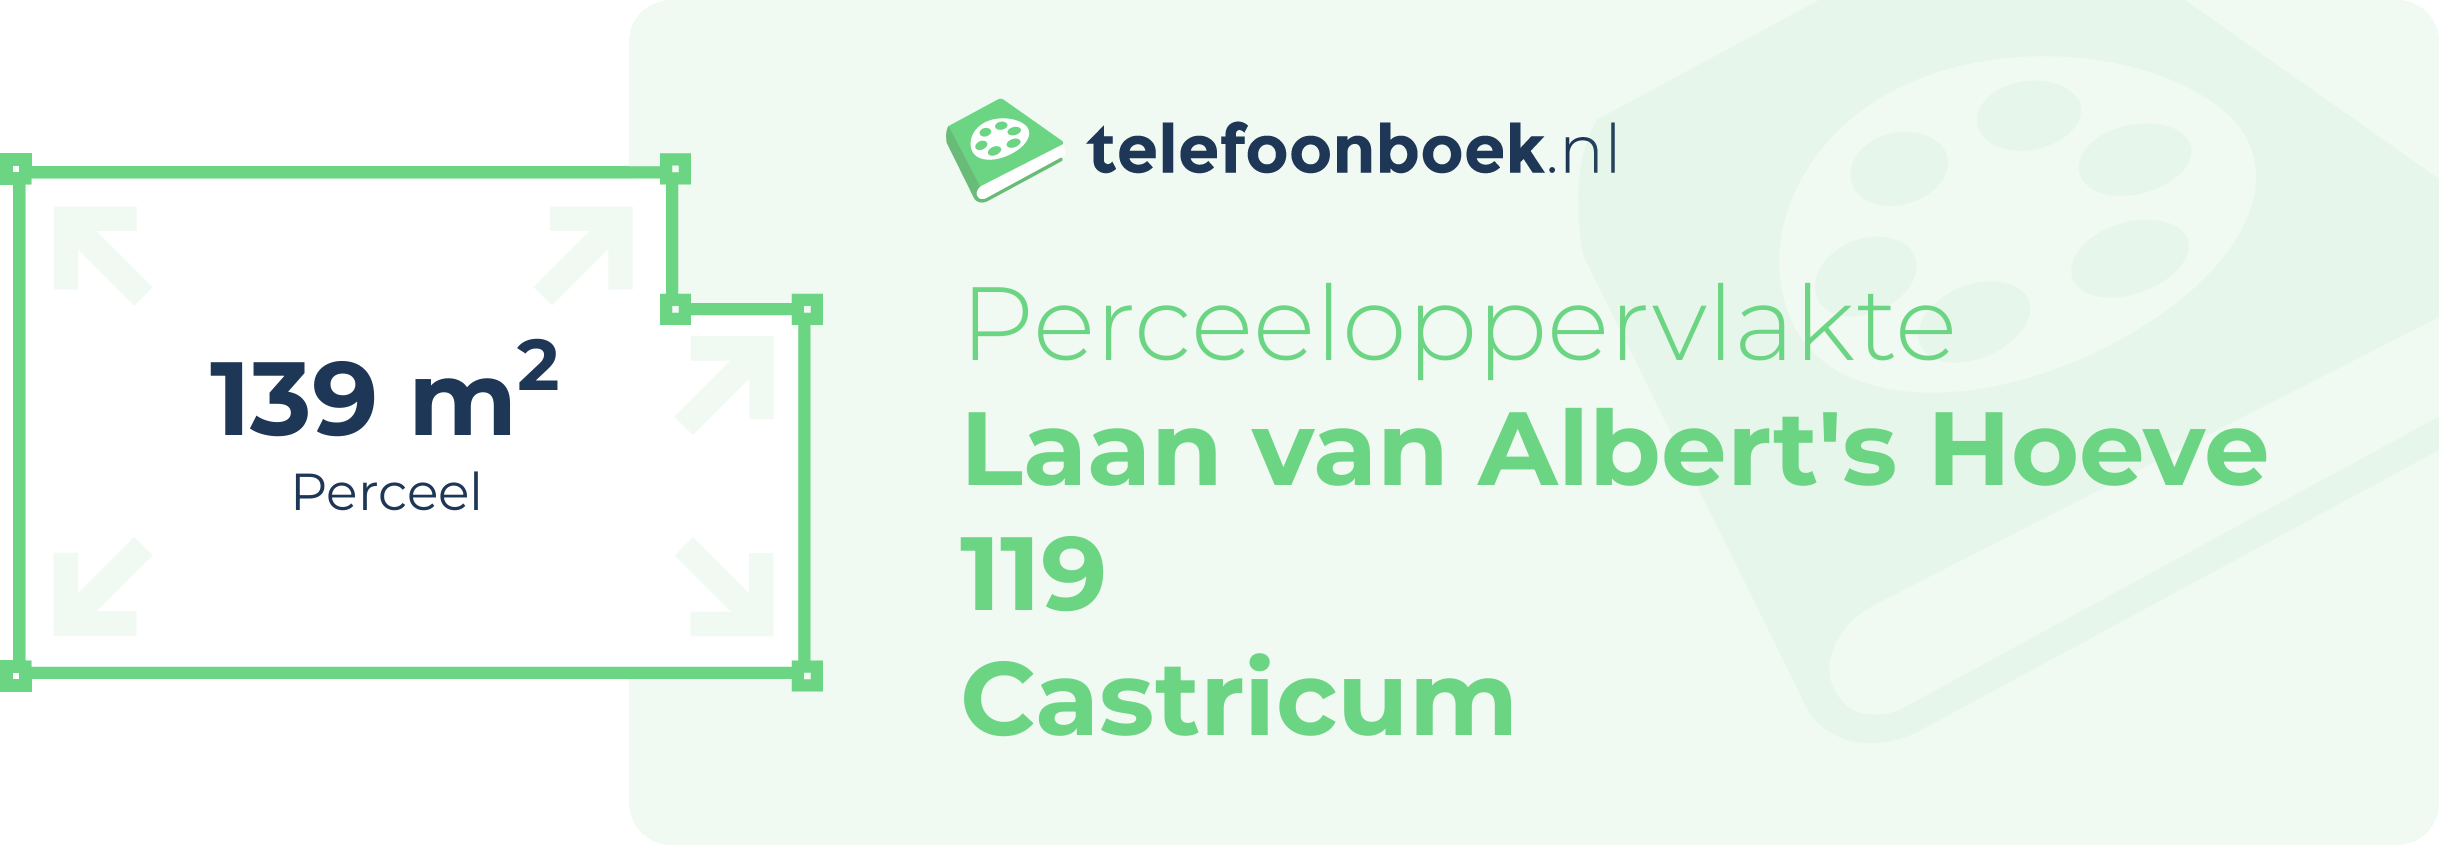 Perceeloppervlakte Laan Van Albert's Hoeve 119 Castricum